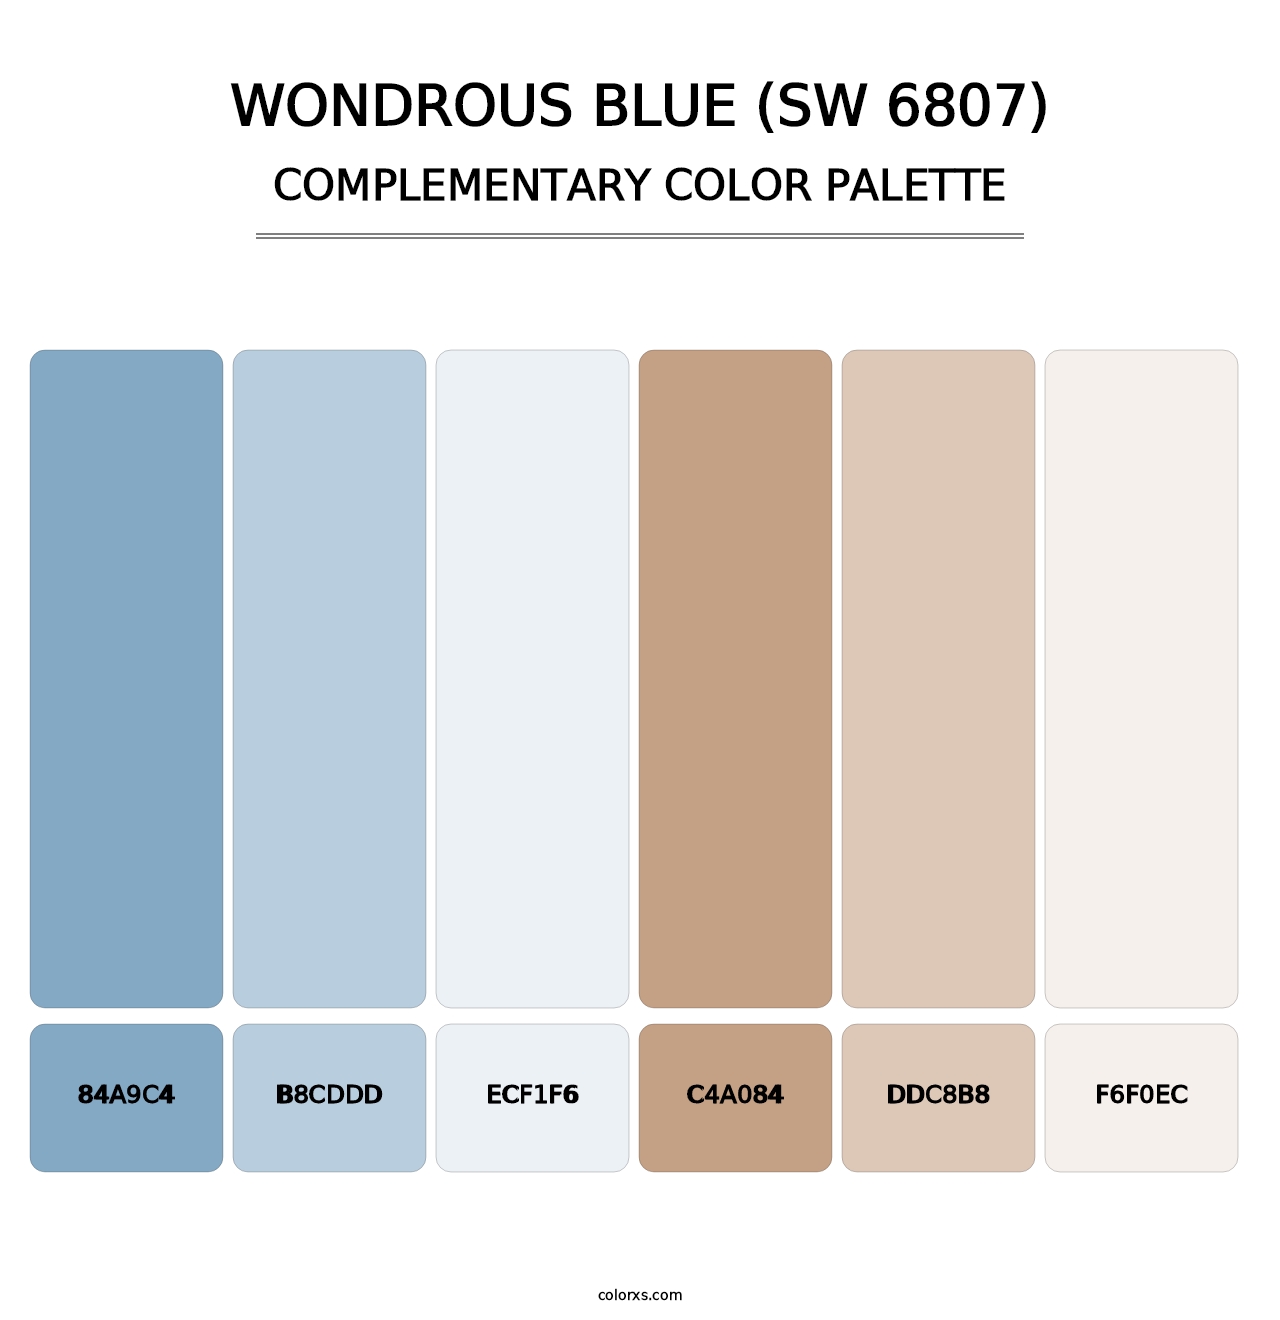 Wondrous Blue (SW 6807) - Complementary Color Palette